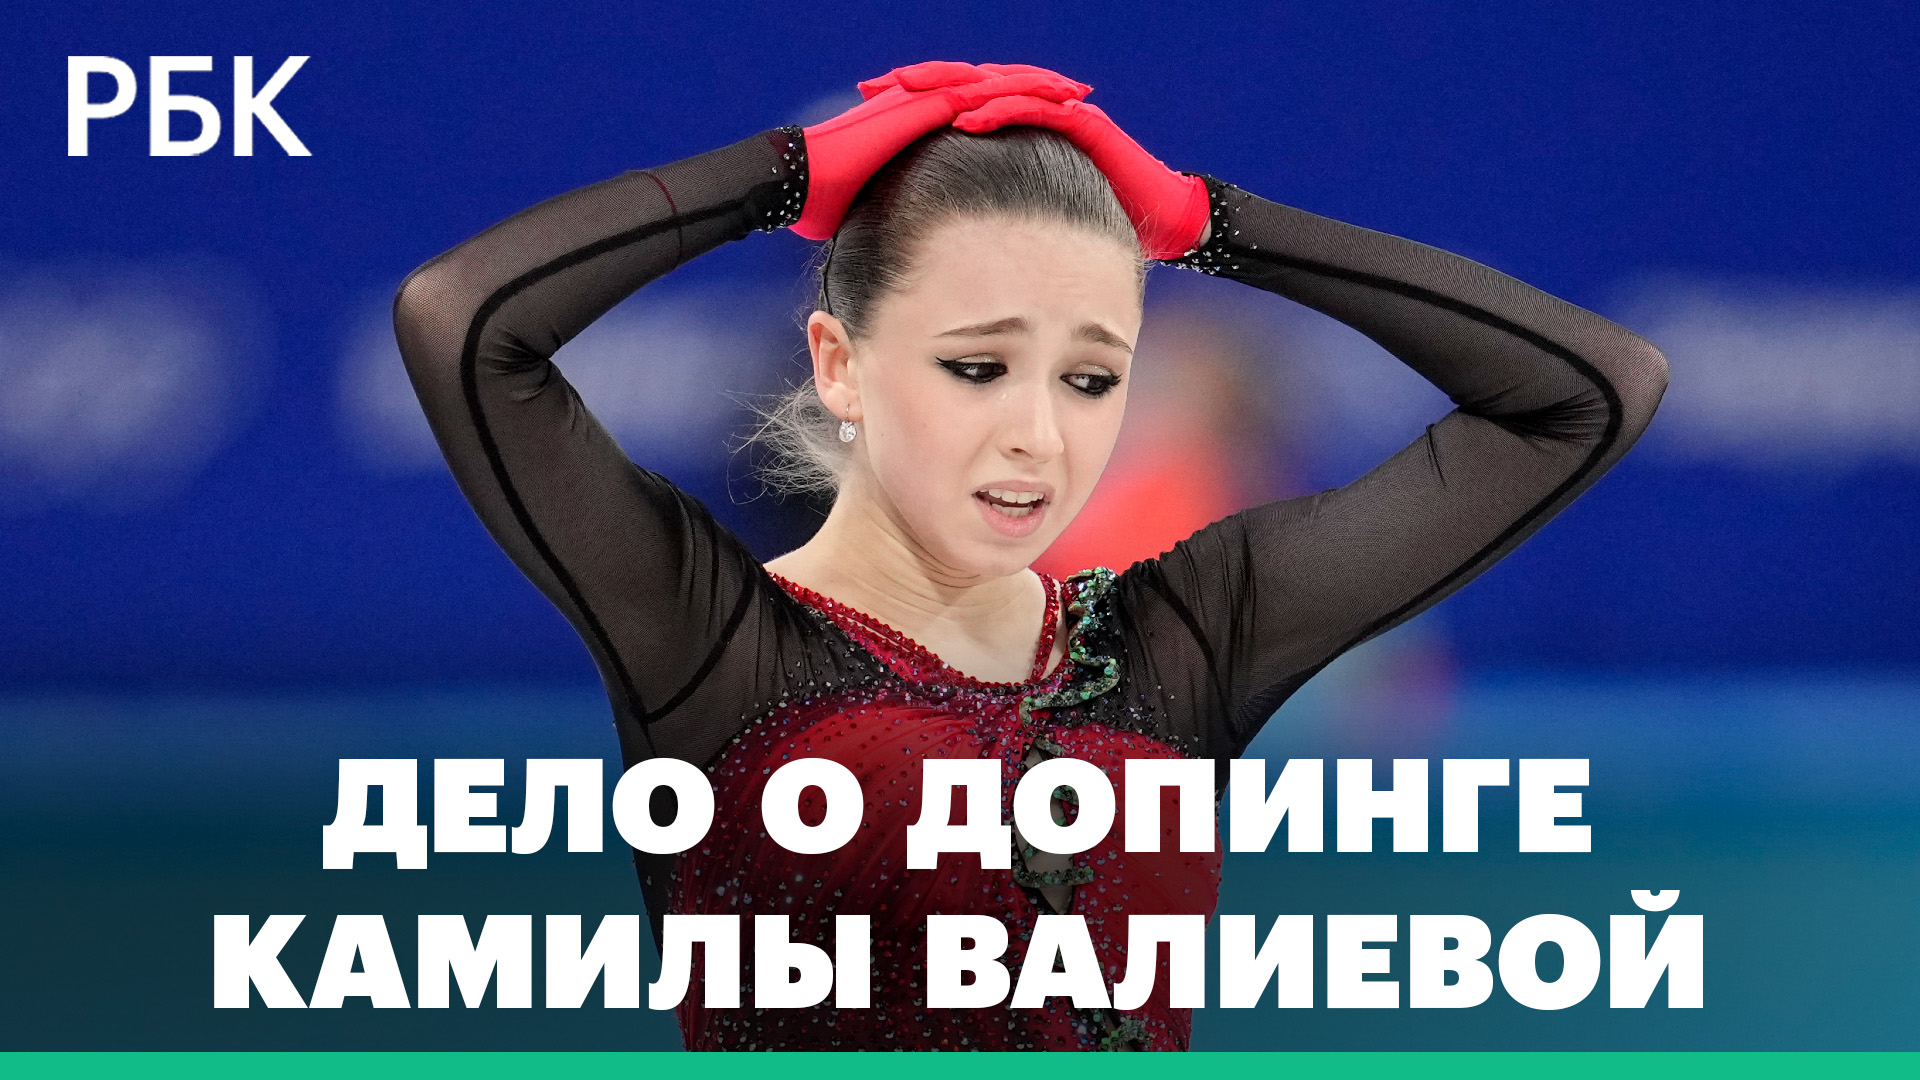 WADA требует отнять у фигуристки Валиевой золотую олимпийскую медаль из-за подозрений в допинге